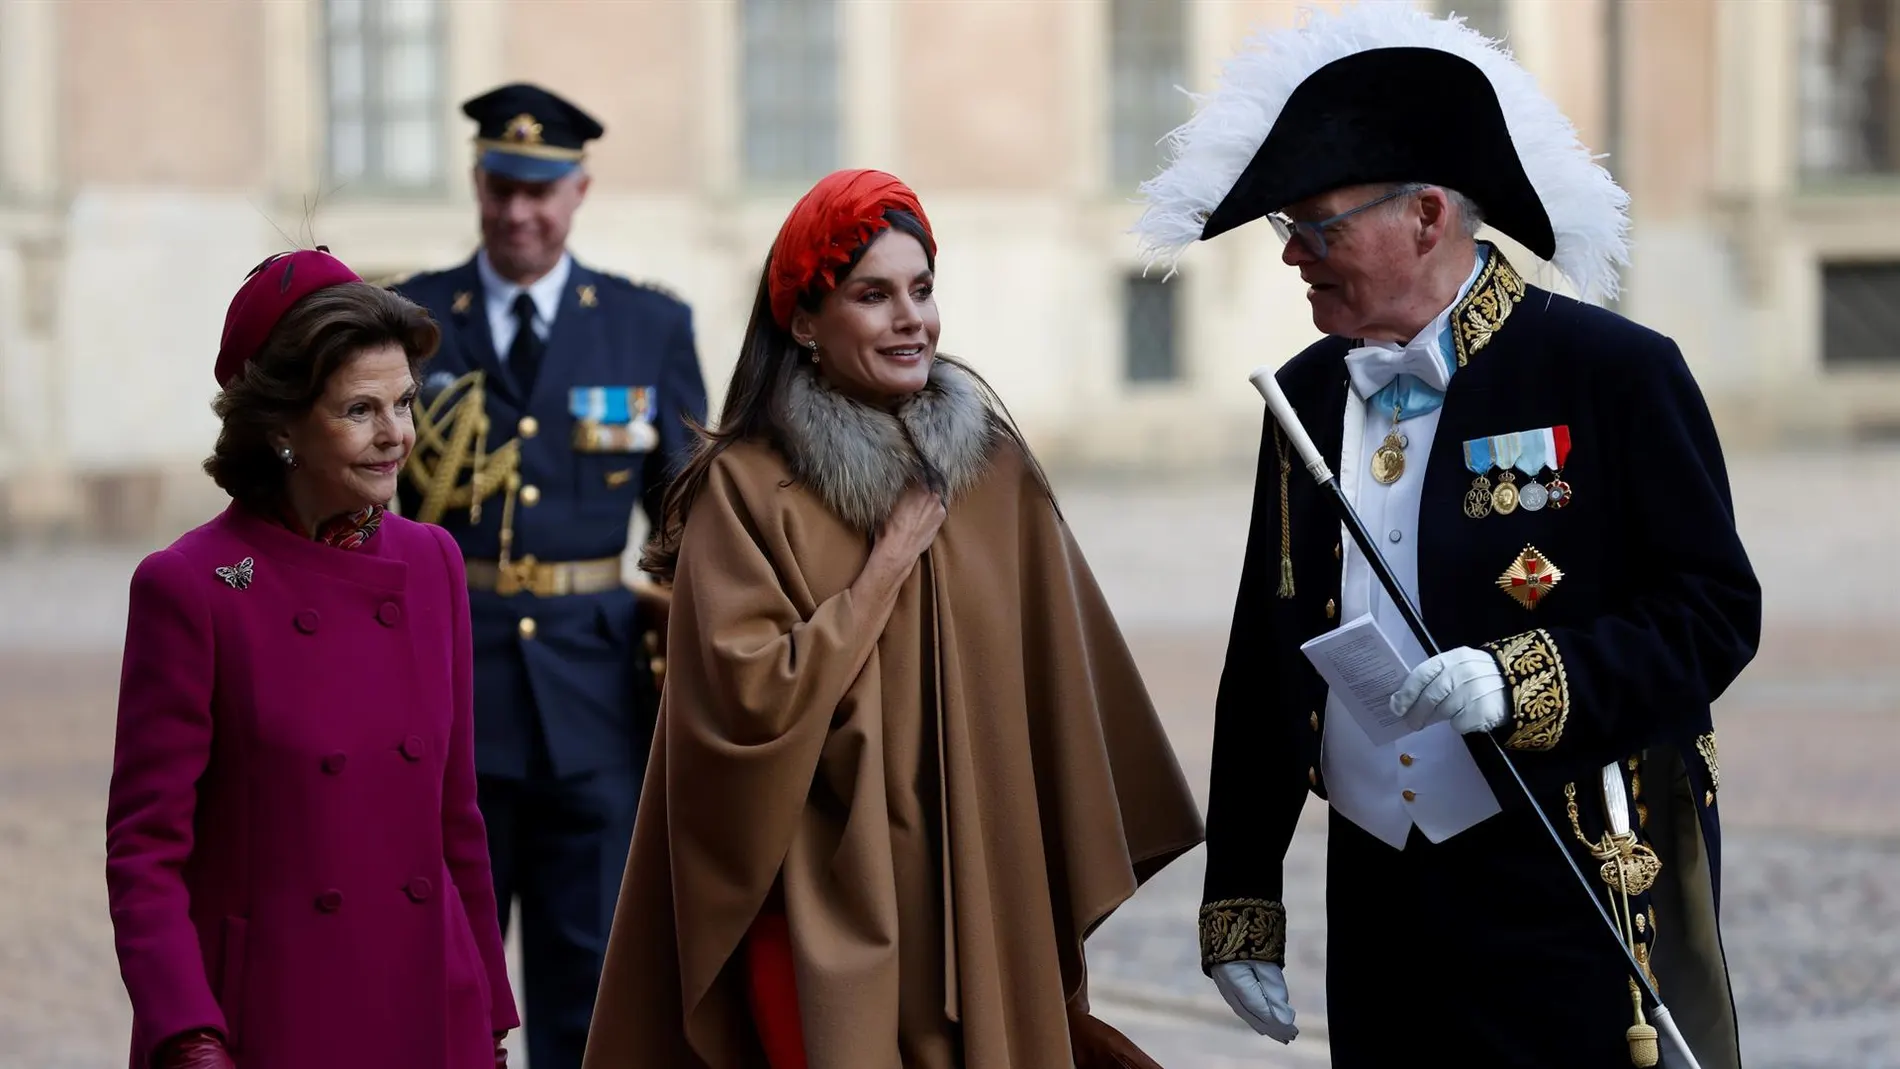 El tocado de la reina Letizia y la carroza, entre las imágenes más llamativas de la visita a Suecia